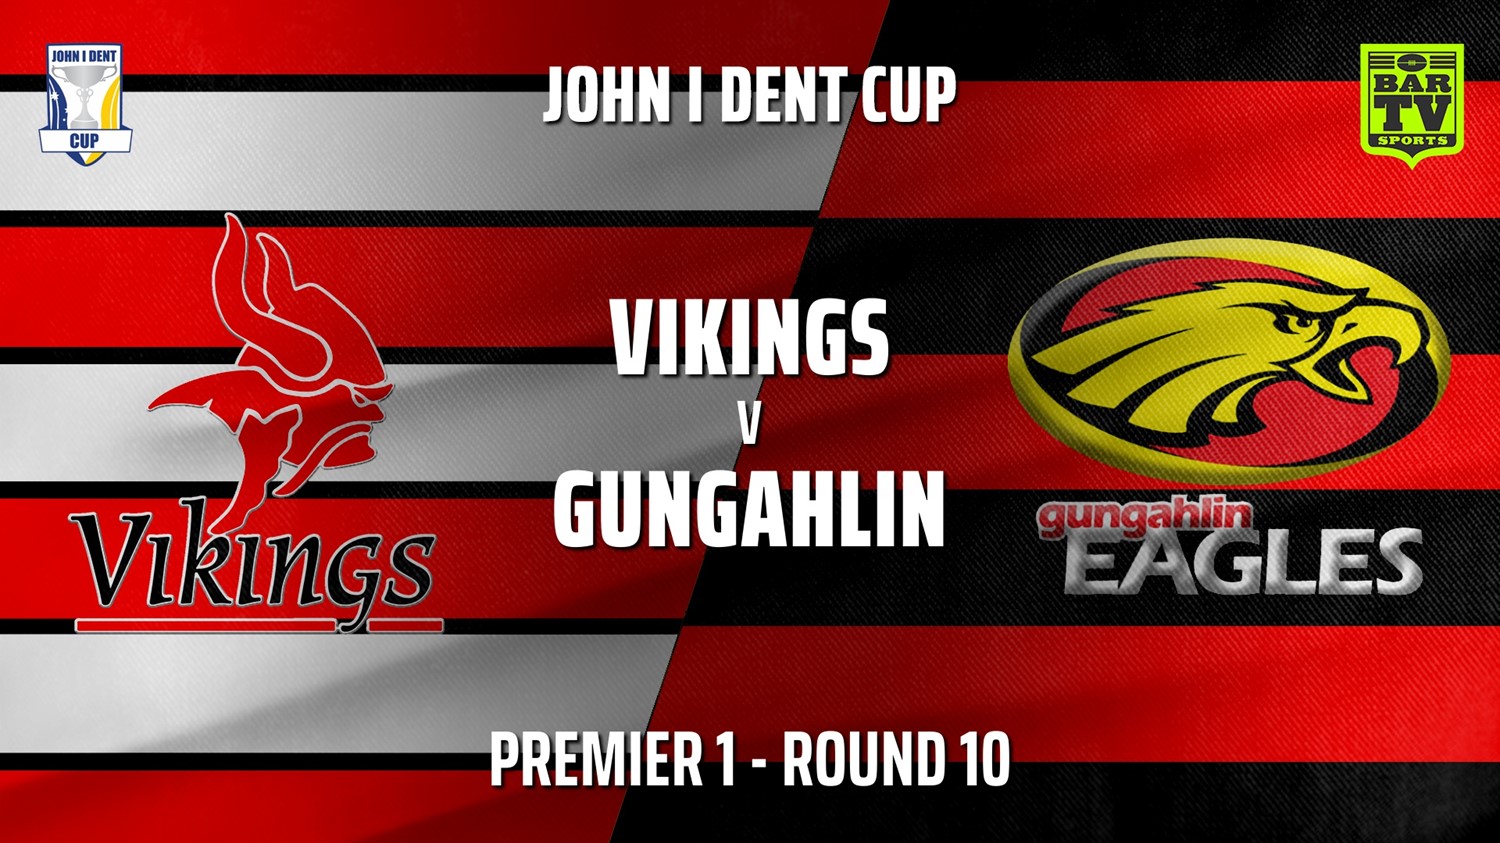 210703-John I Dent (ACT) Round 10 - Premier 1 - Tuggeranong Vikings v Gungahlin Eagles Slate Image